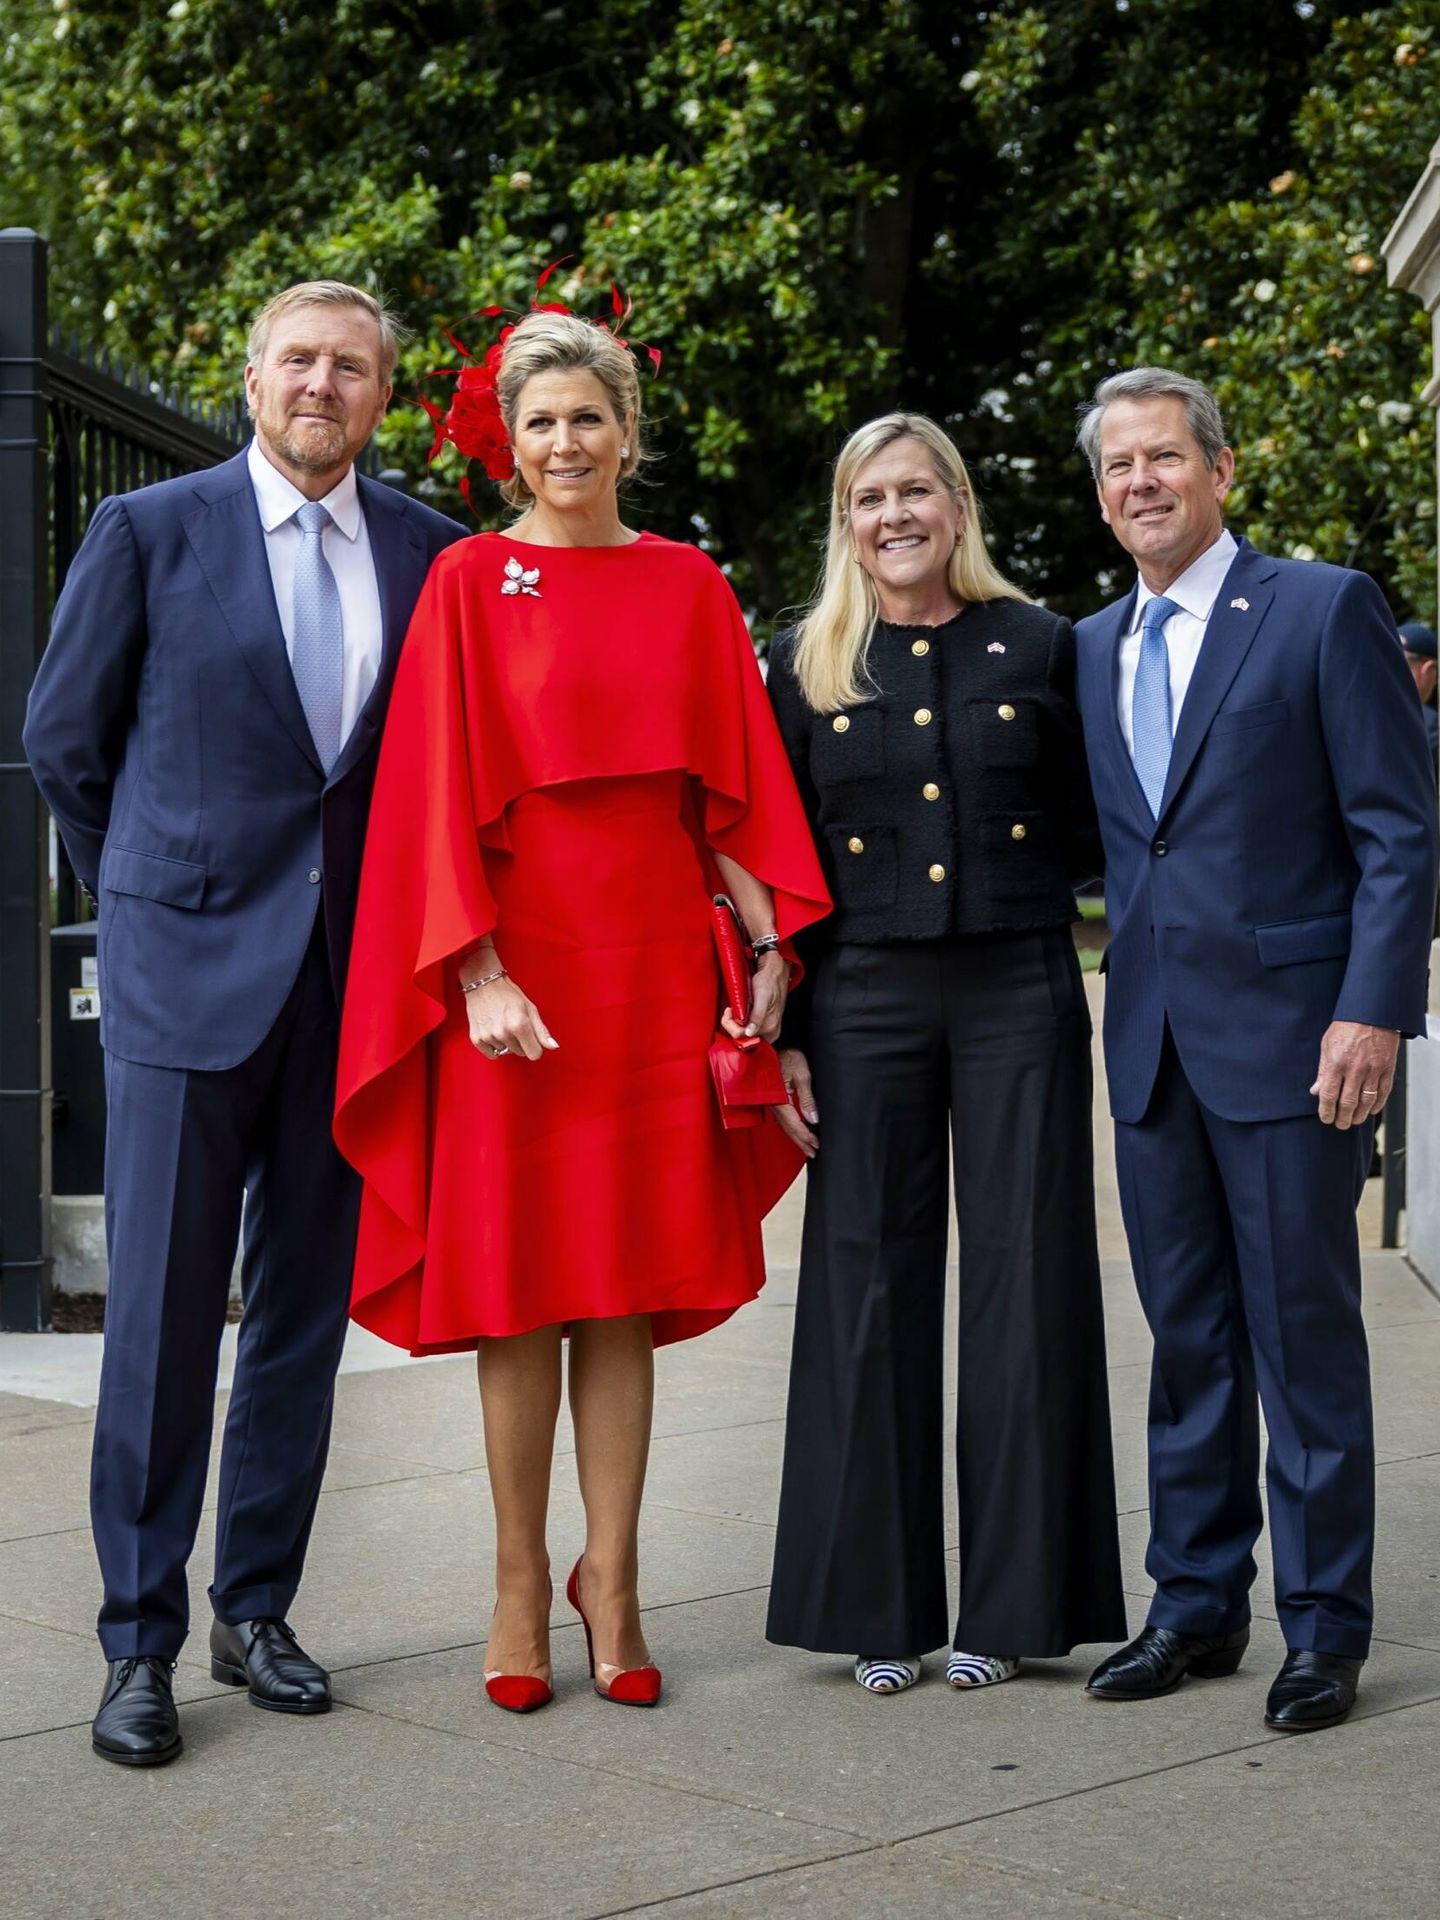  Los reyes de Holanda junto al gobernador de Georgia y su esposa. (Gtres)